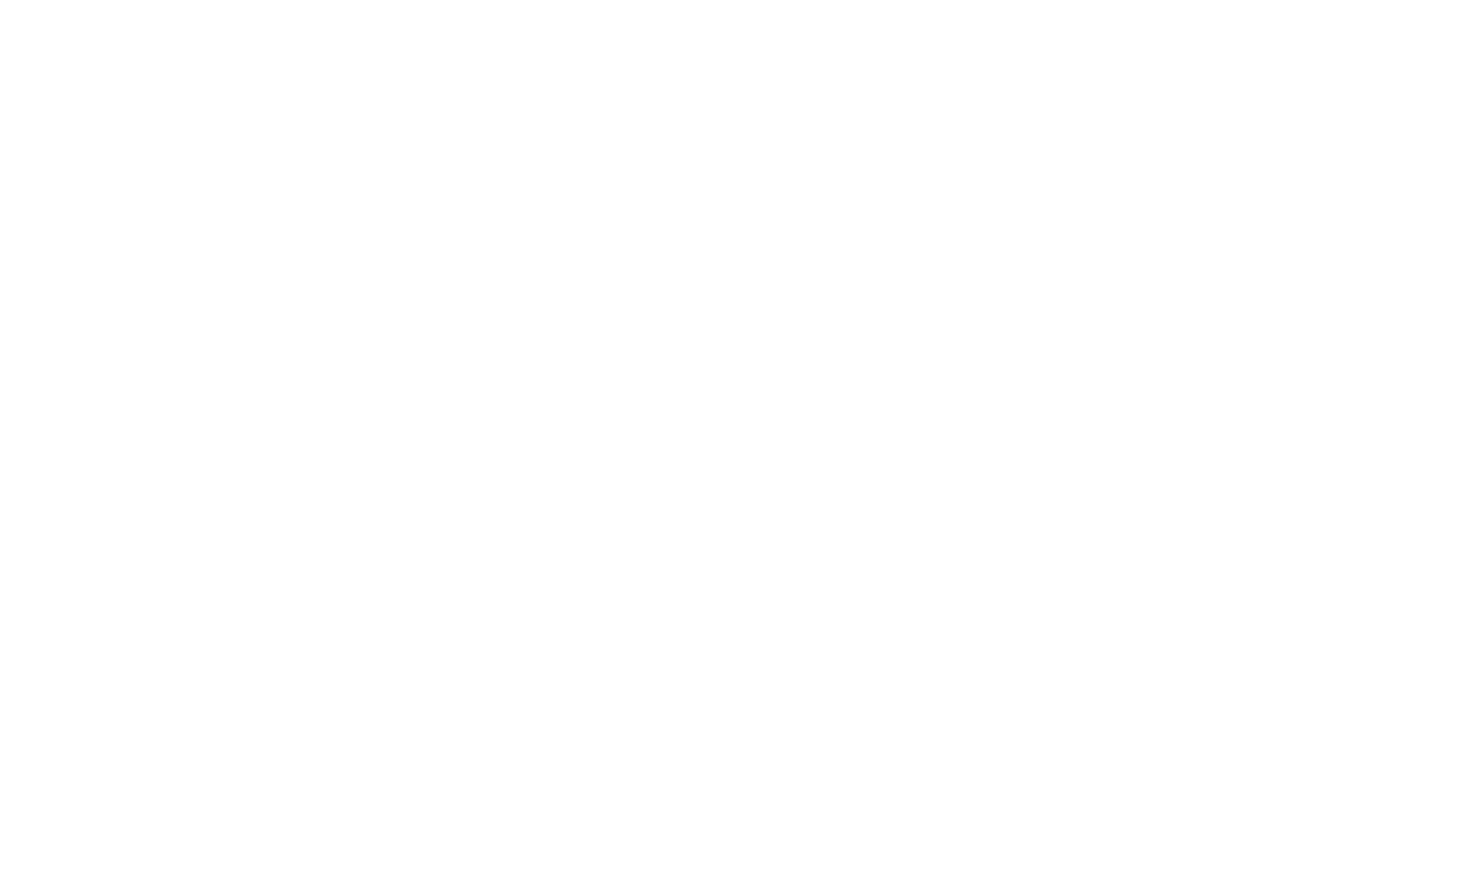 angel studios logo